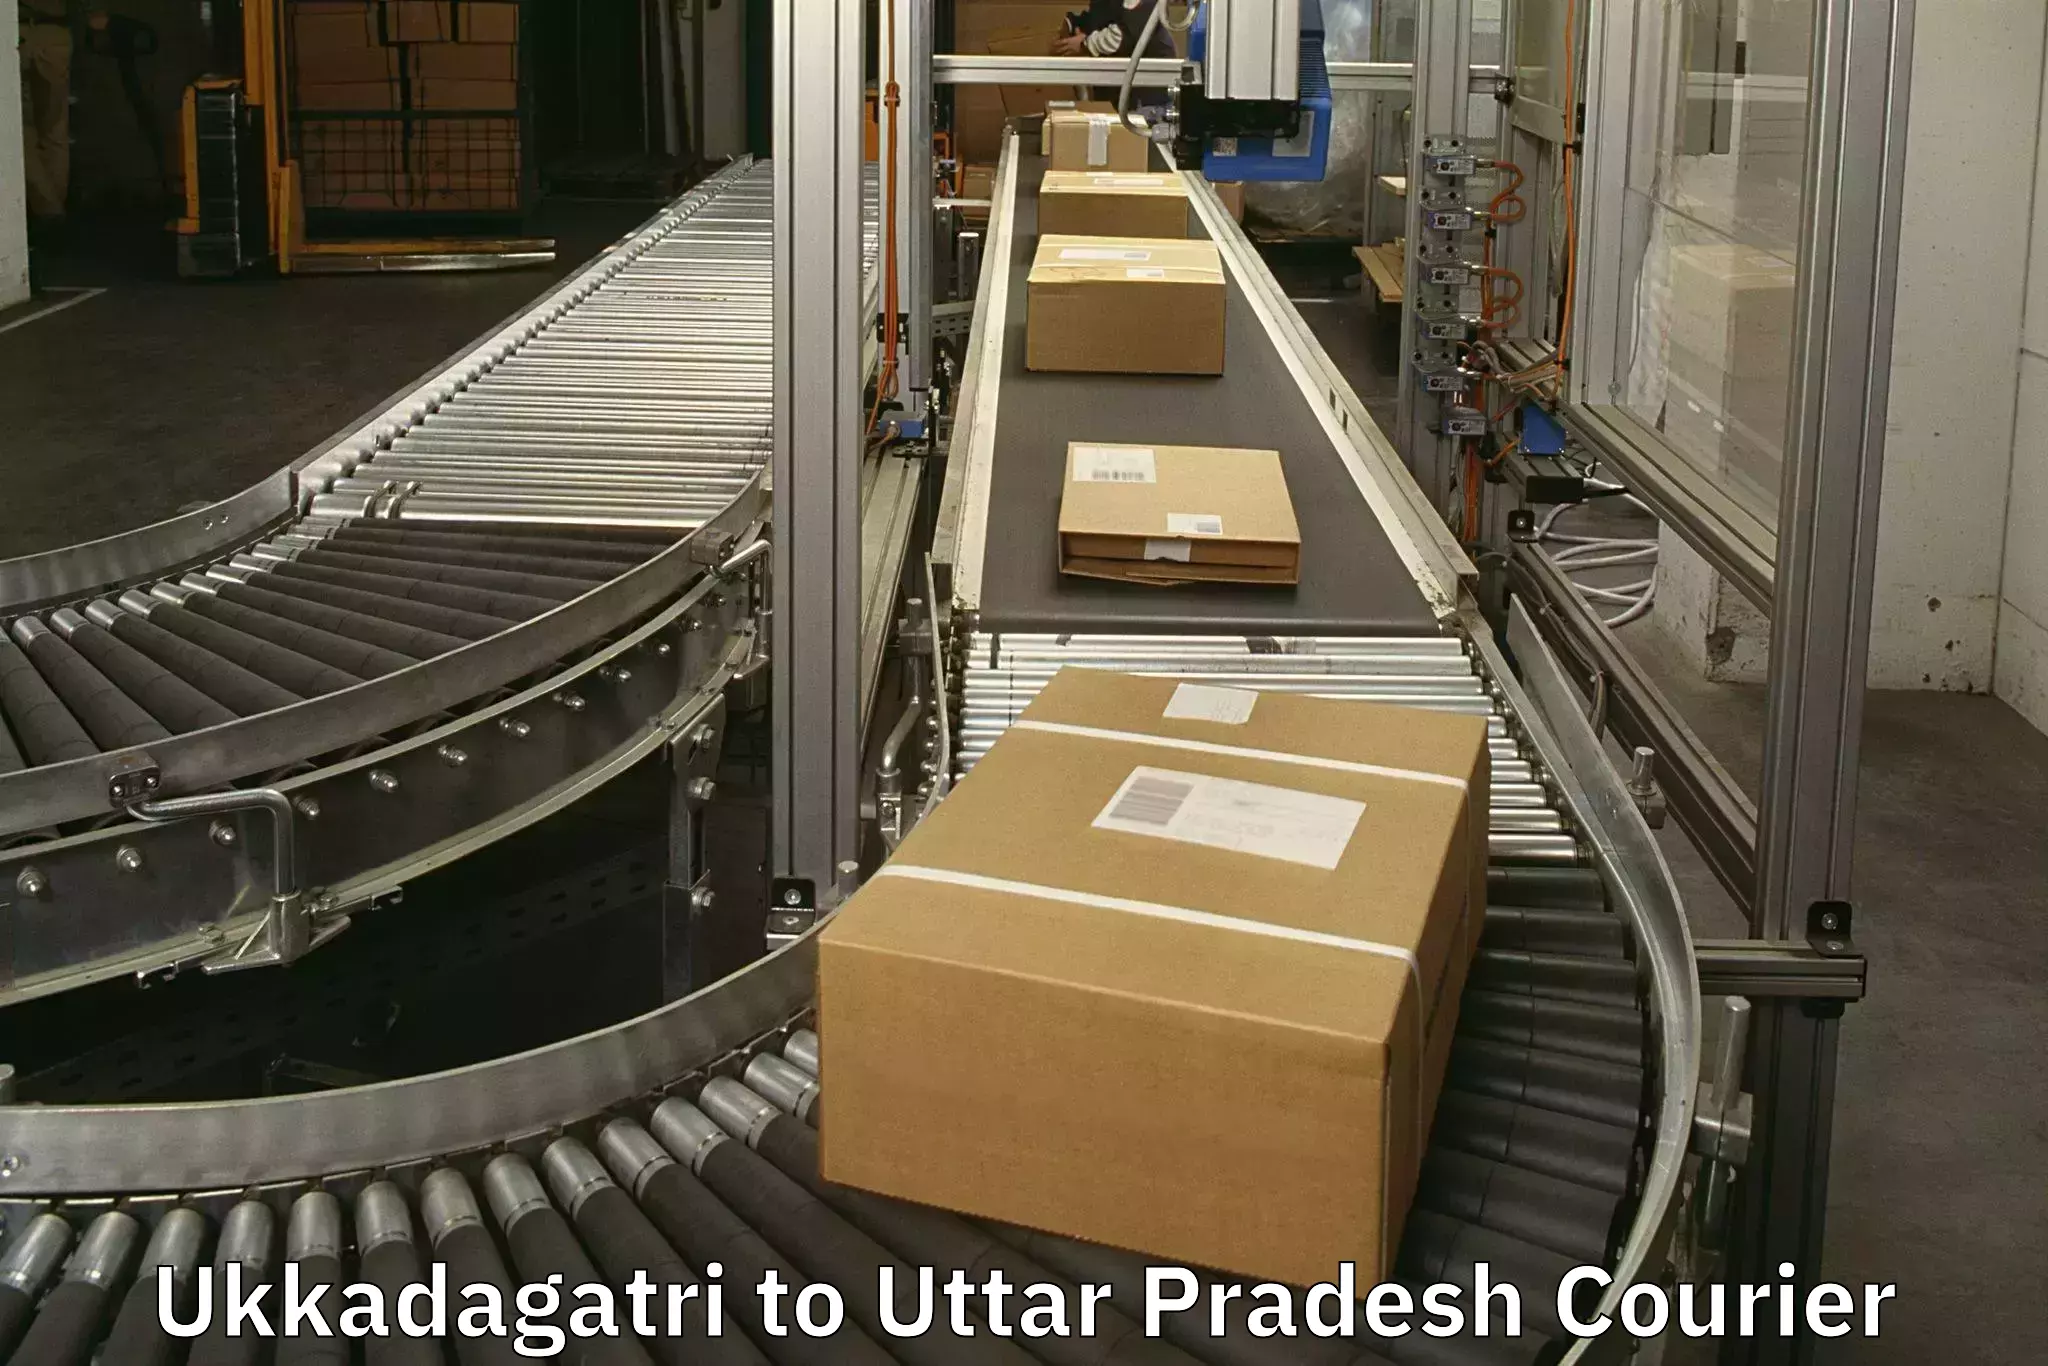 Customized luggage delivery Ukkadagatri to Badlapur